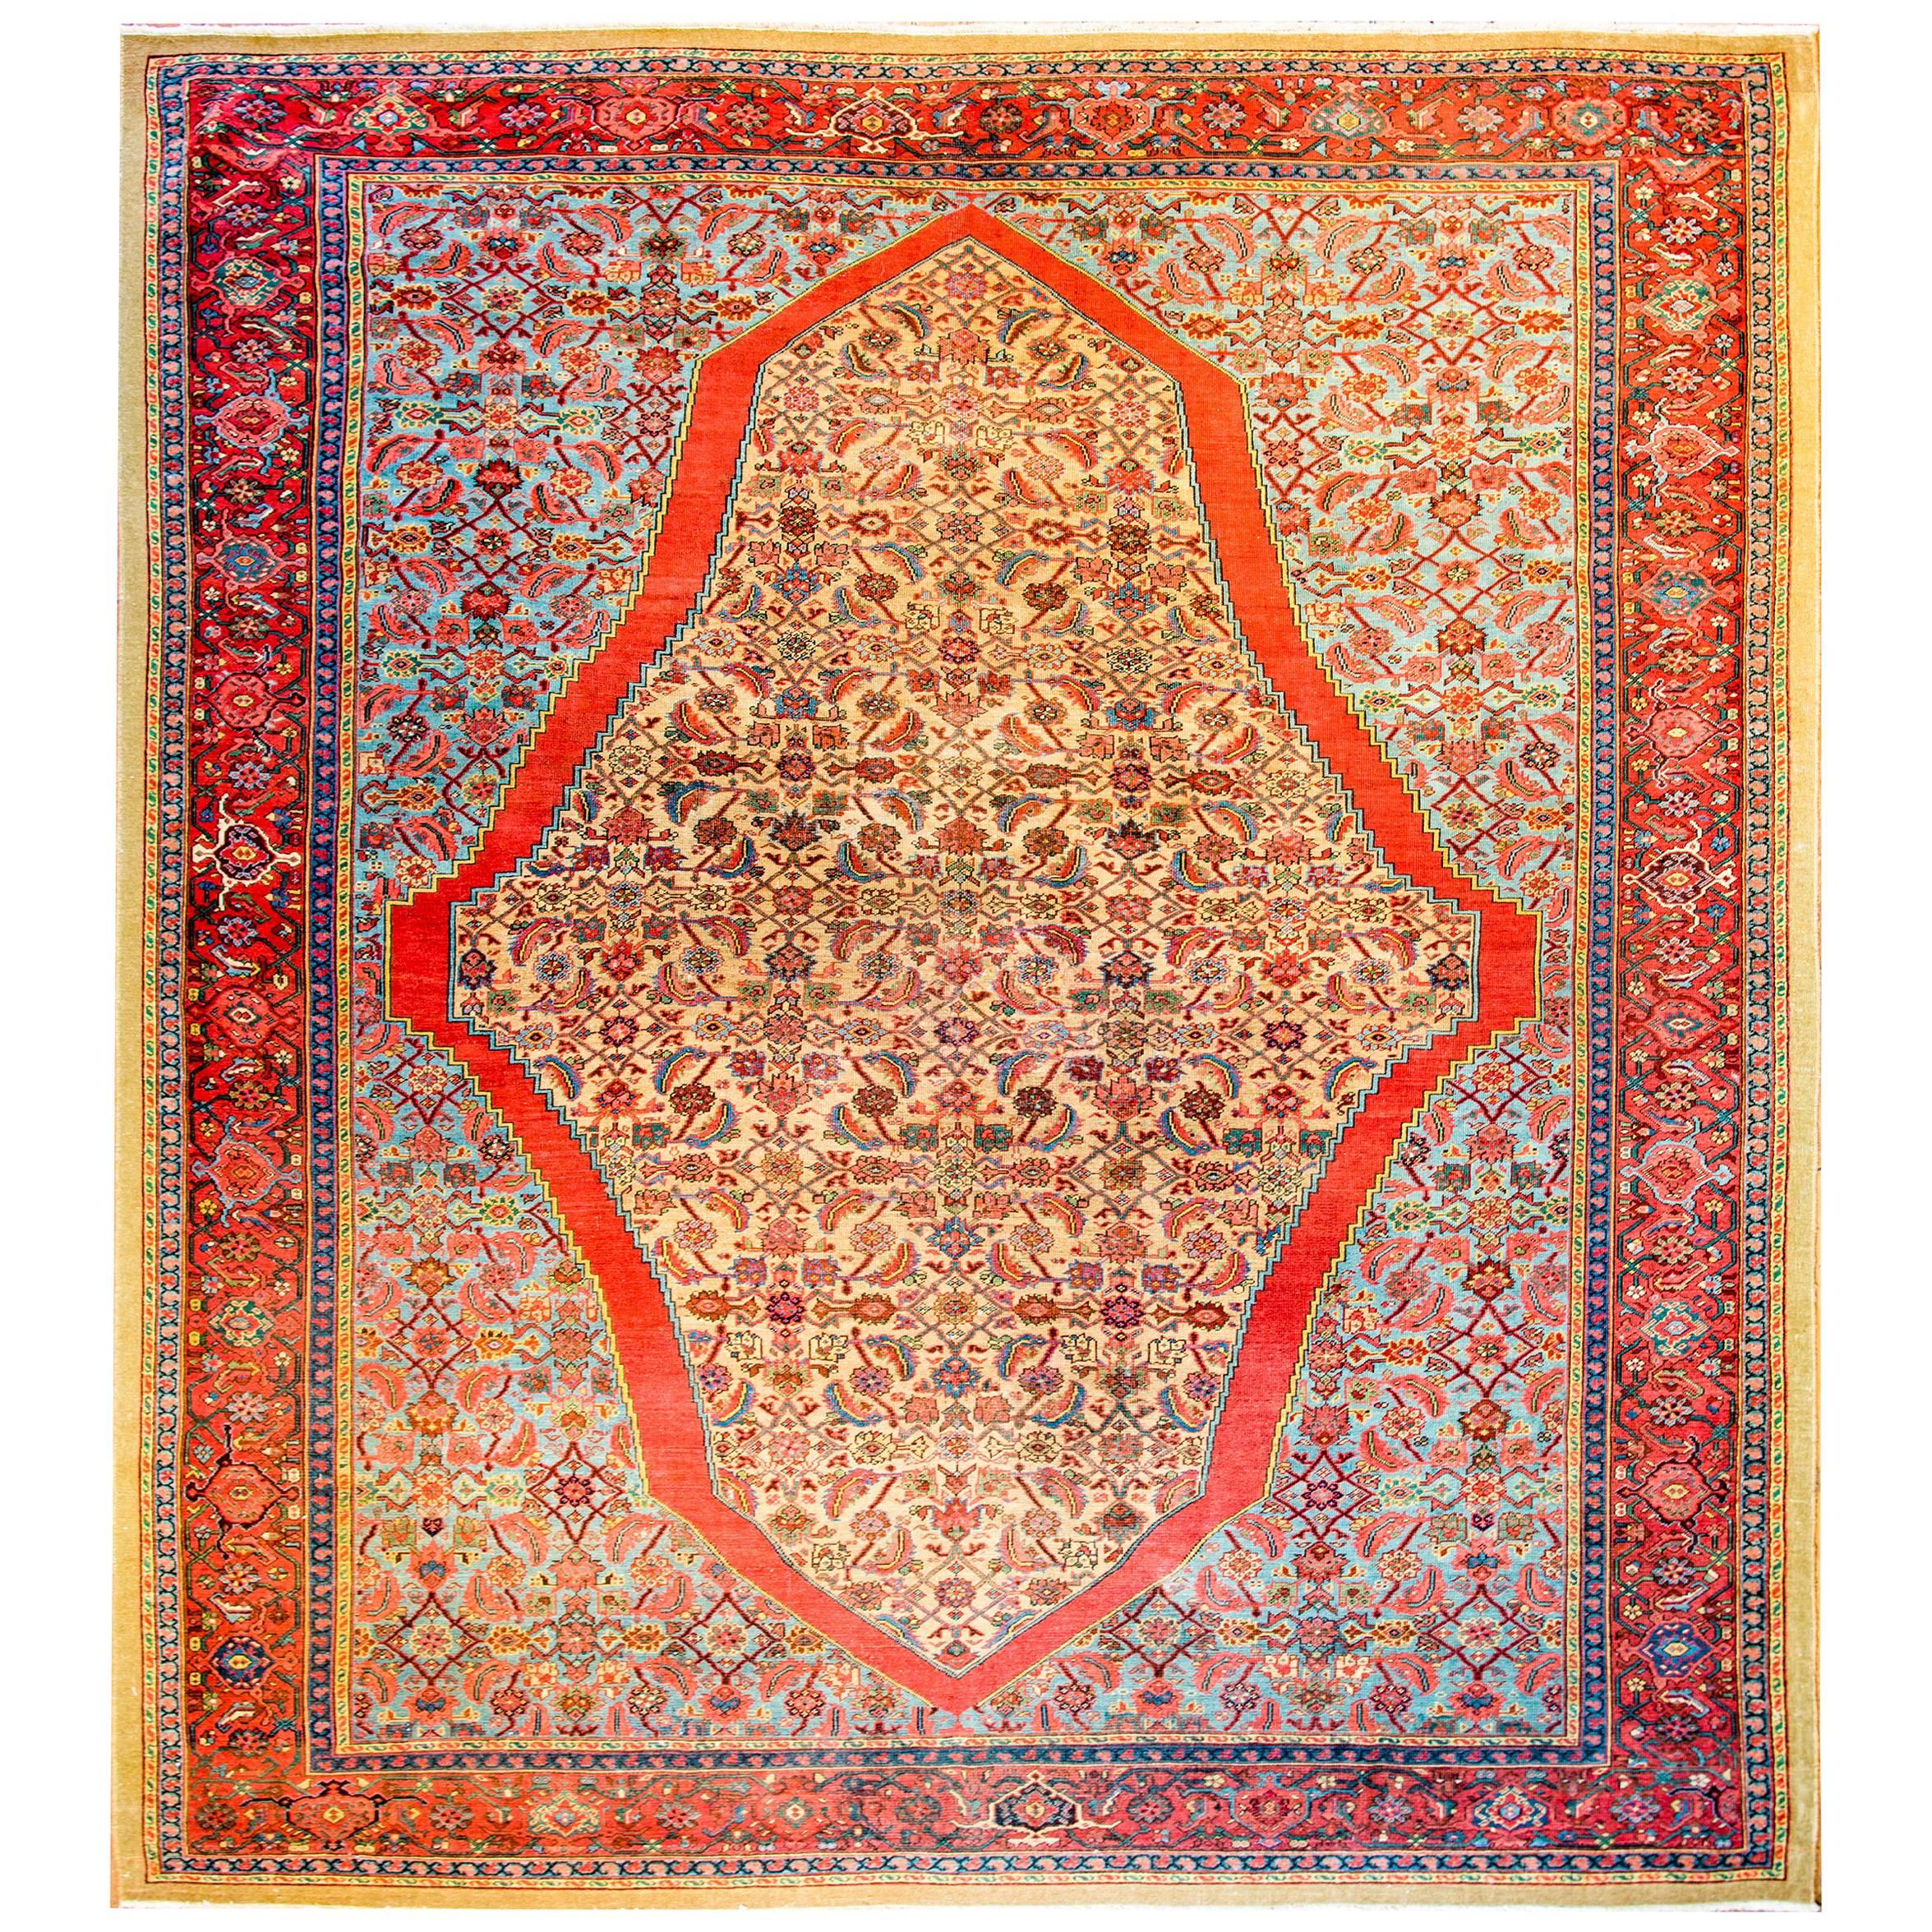 Unglaublicher Bakshaish-Teppich aus dem frühen 20. Jahrhundert